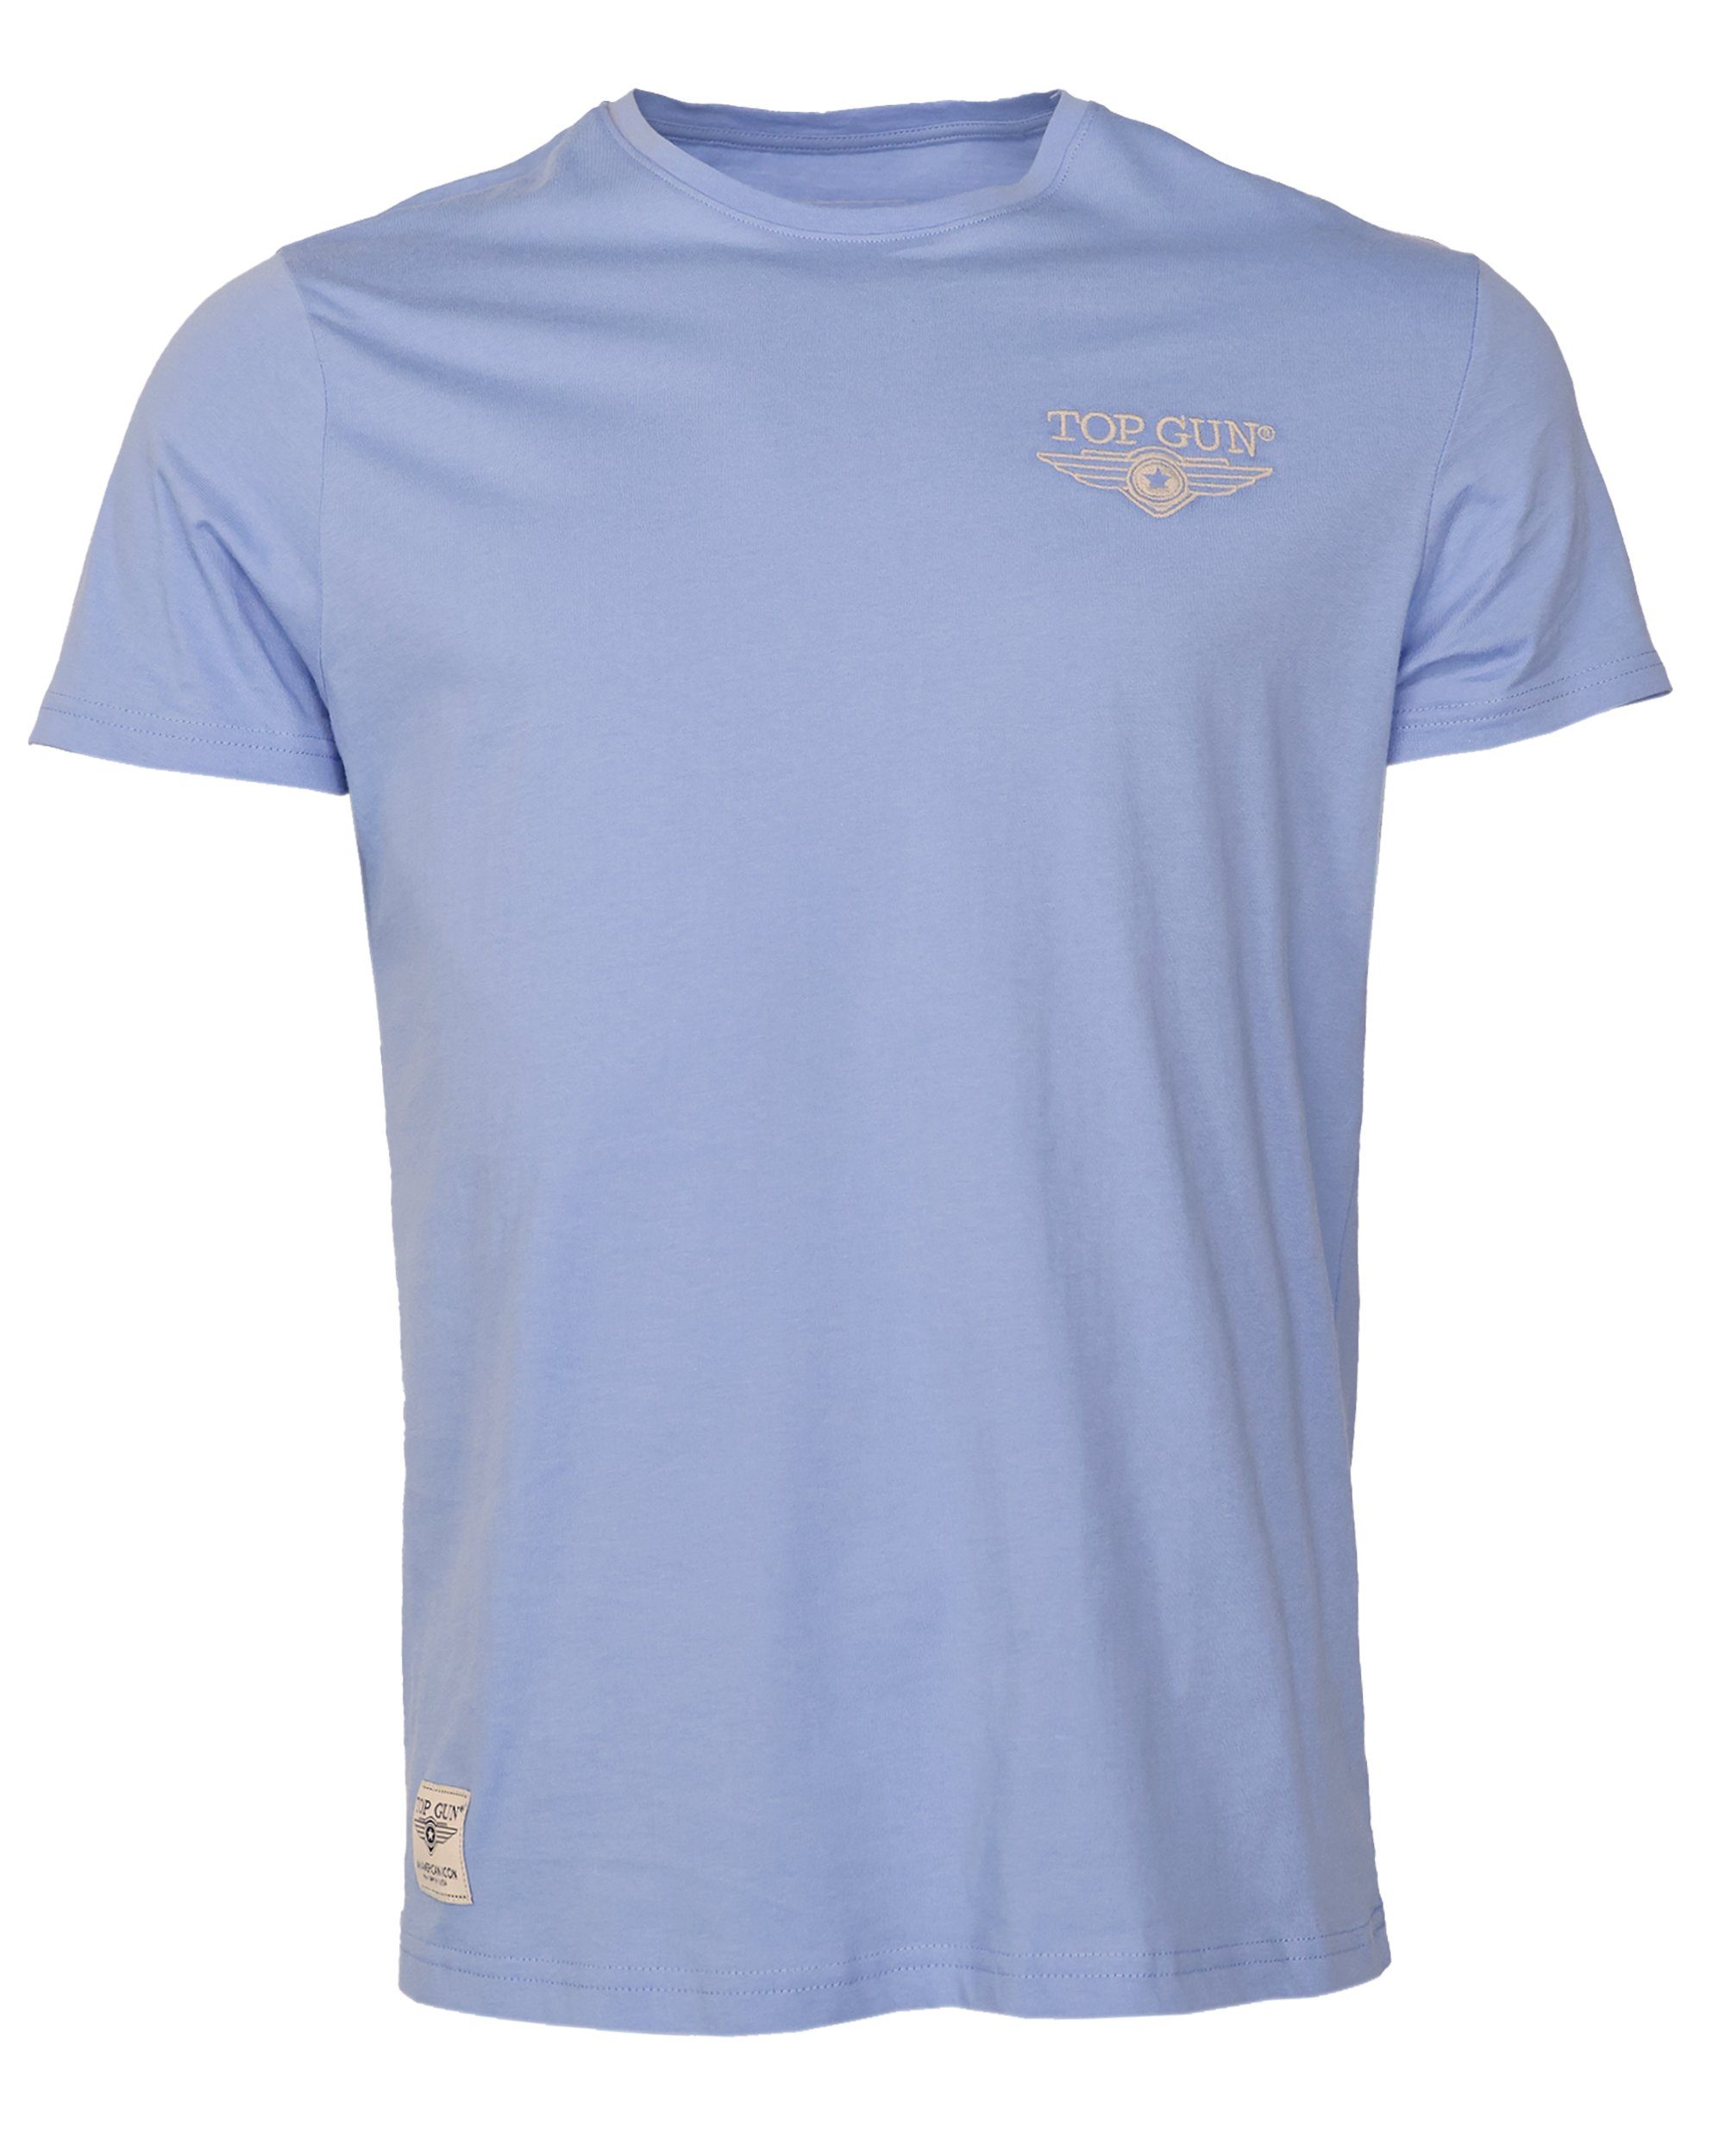 TOP GUN T-Shirt light blue TG20213036